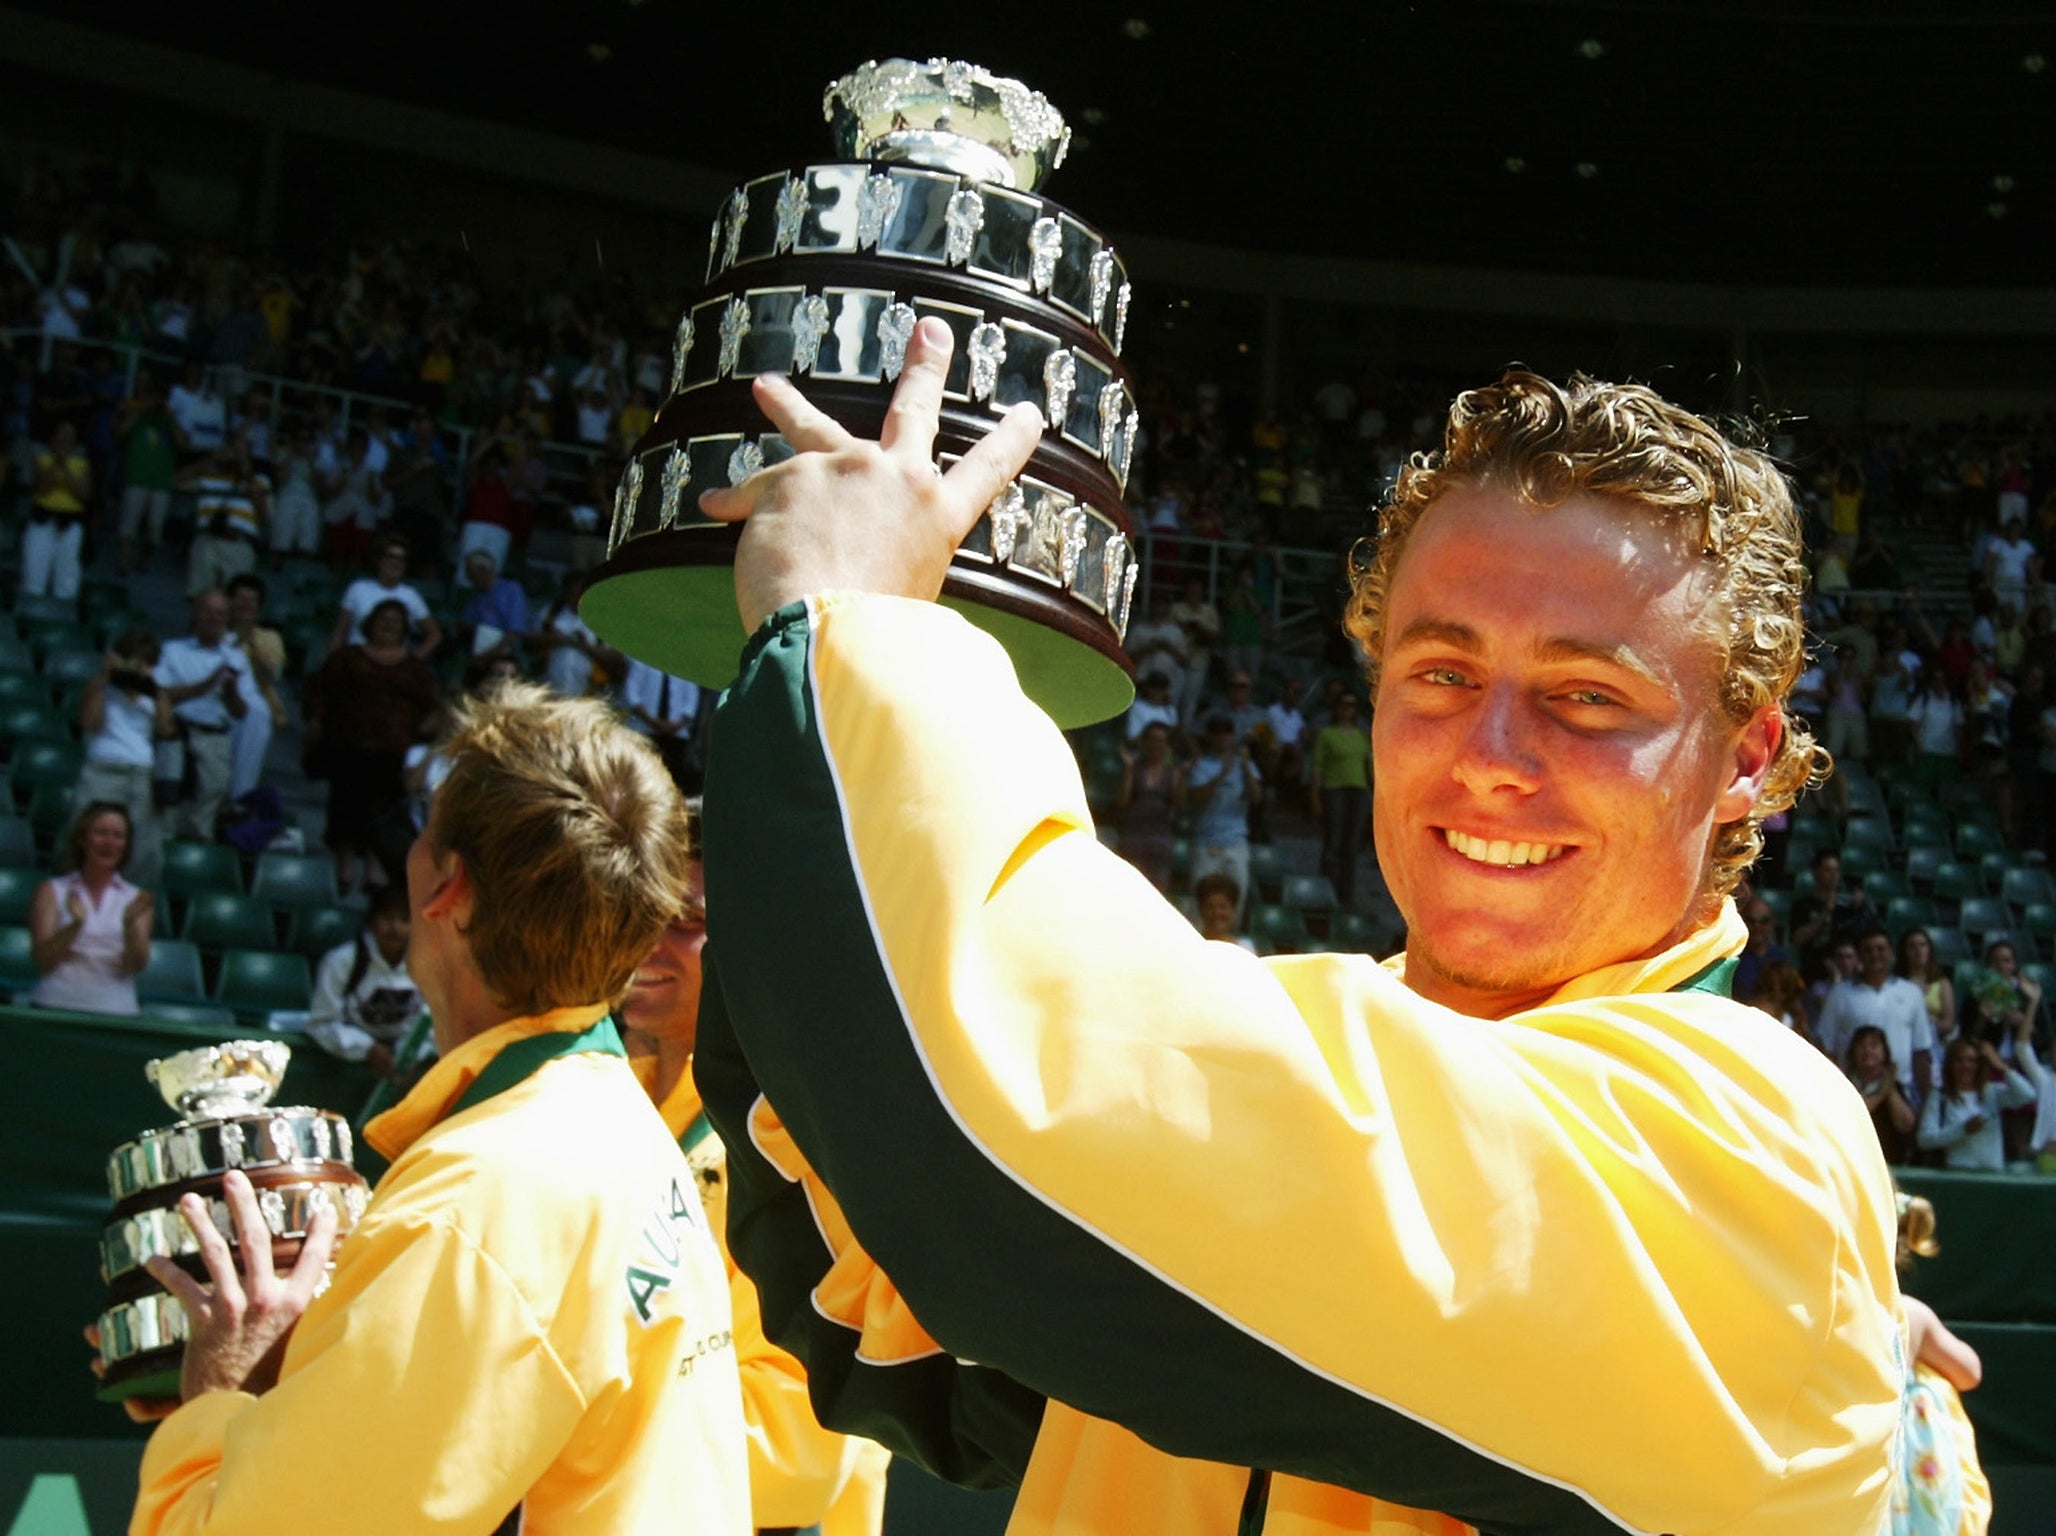 Hewitt helped Australia win the Davis Cup in 2003